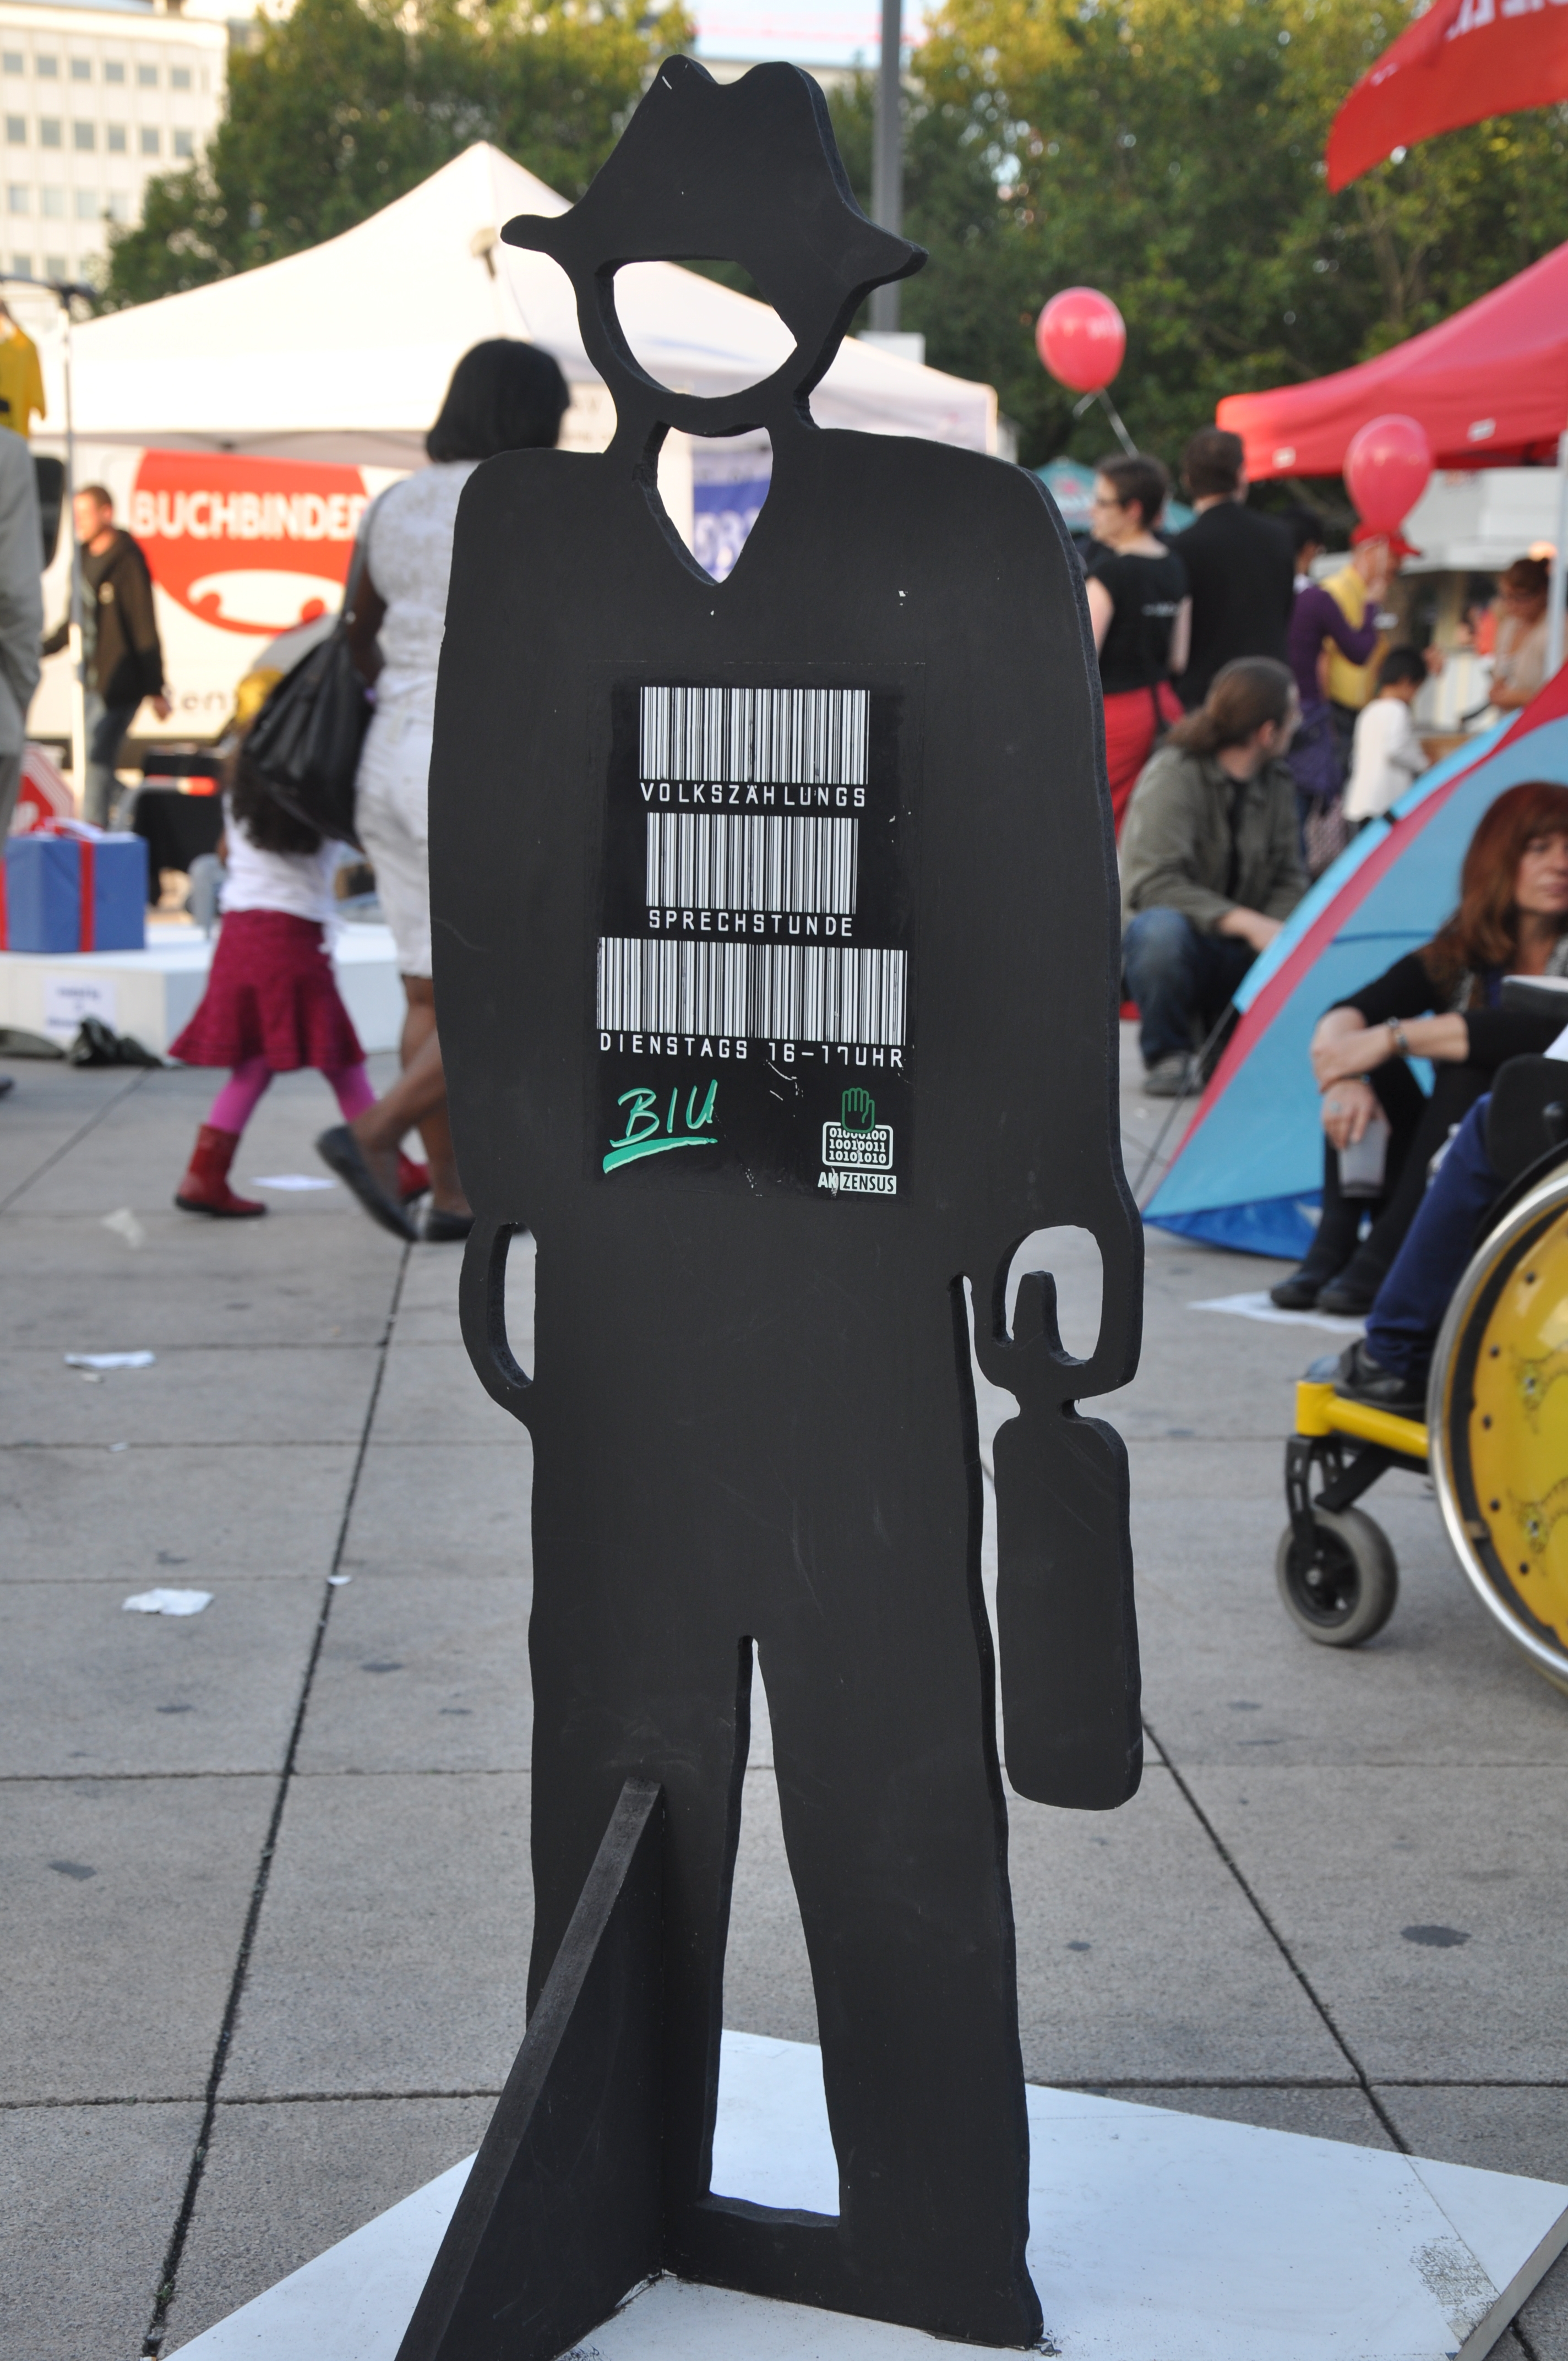 Ein Pappaufsteller in Form eines Mannes mit aufgedruckten Barcodes